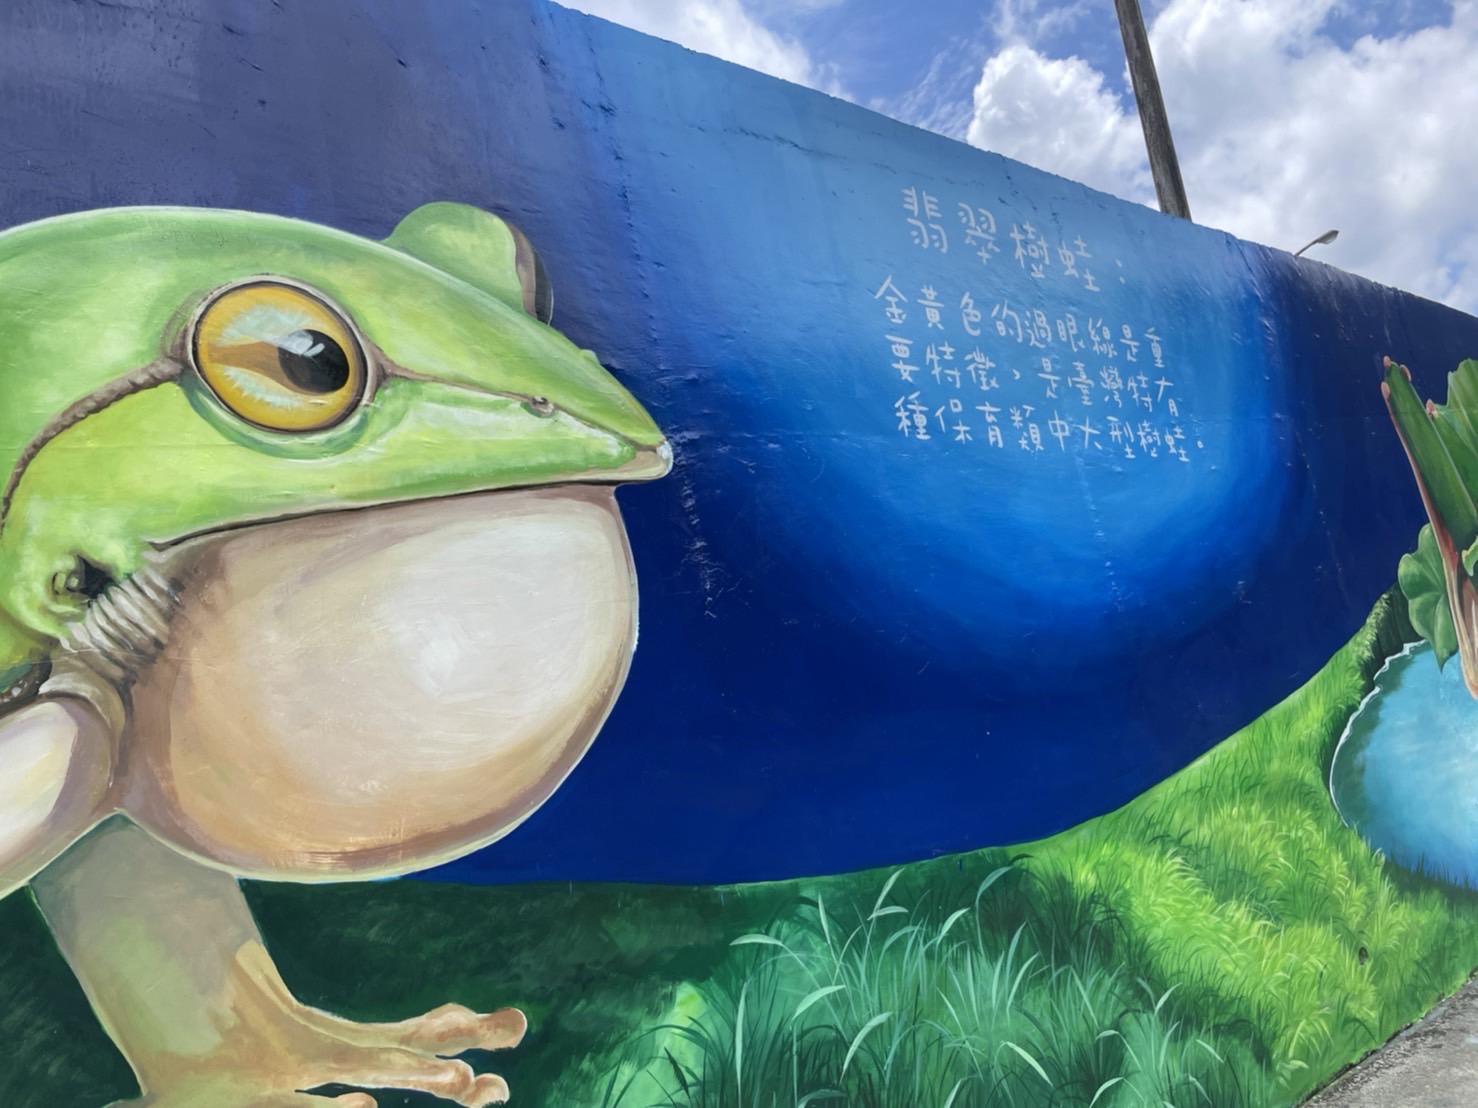 坪林水資源再生暨環境教育中心旁觀魚自行車道圍牆彩繪照